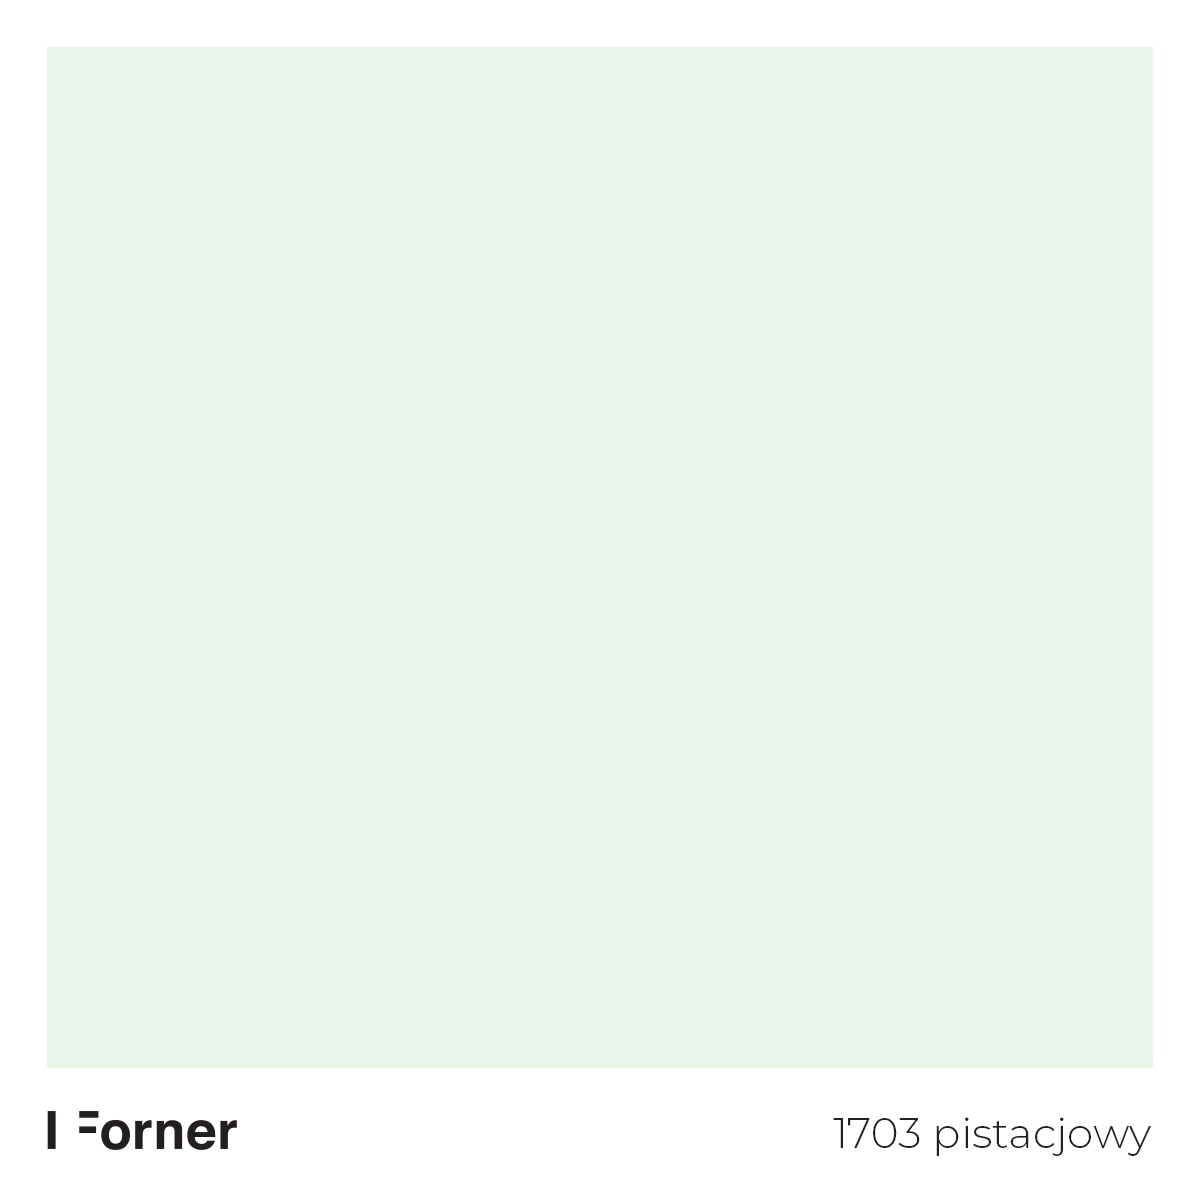 1703 pistacjowy - Velvet ultramatt Collection Forner